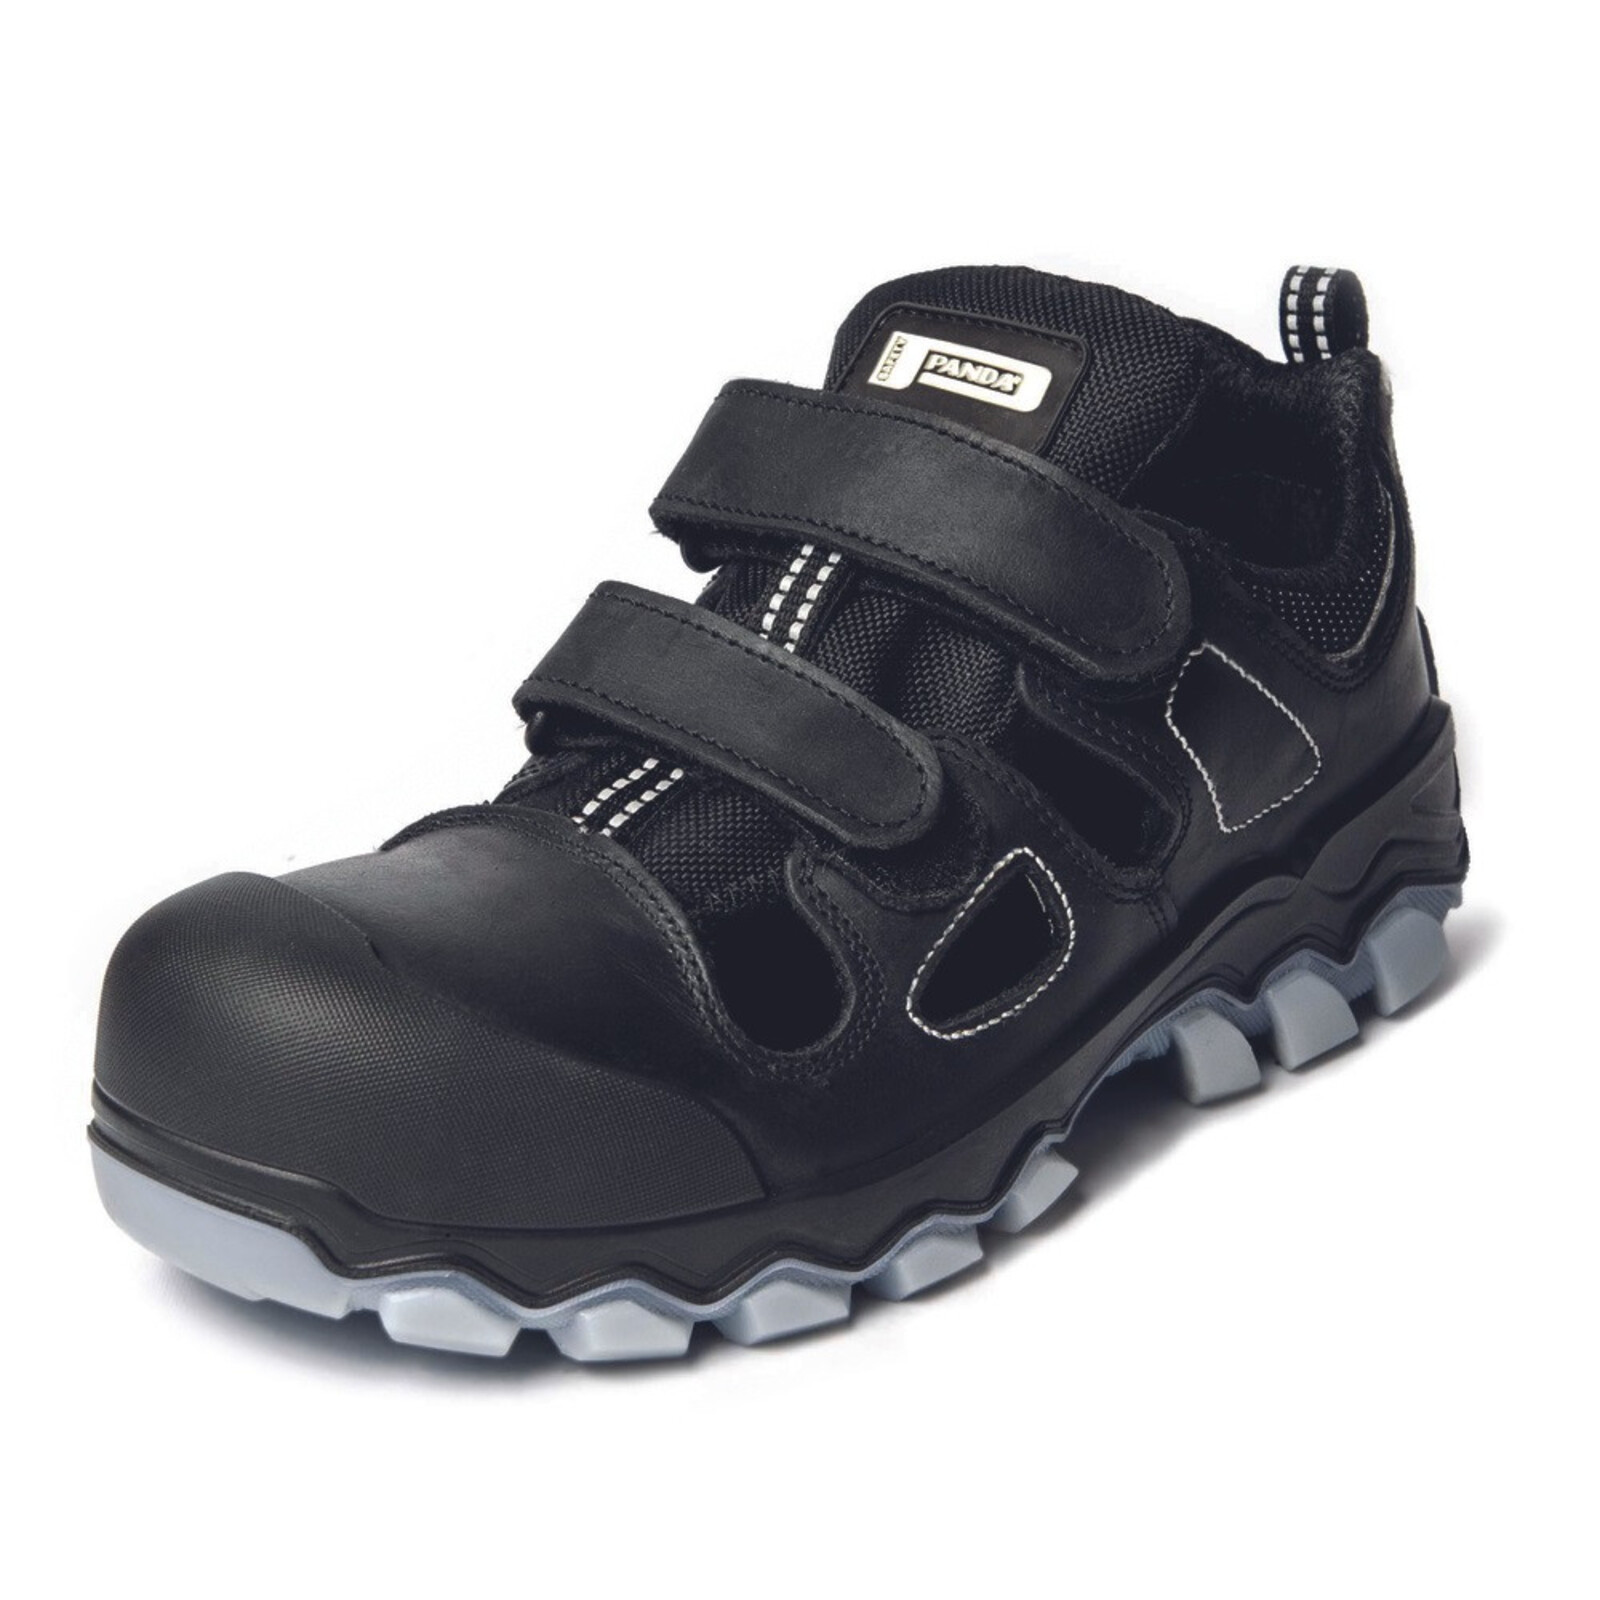 Bezpečnostné sandále Panda Techo No. Two MF S1P SRC - veľkosť: 48, farba: čierna/sivá